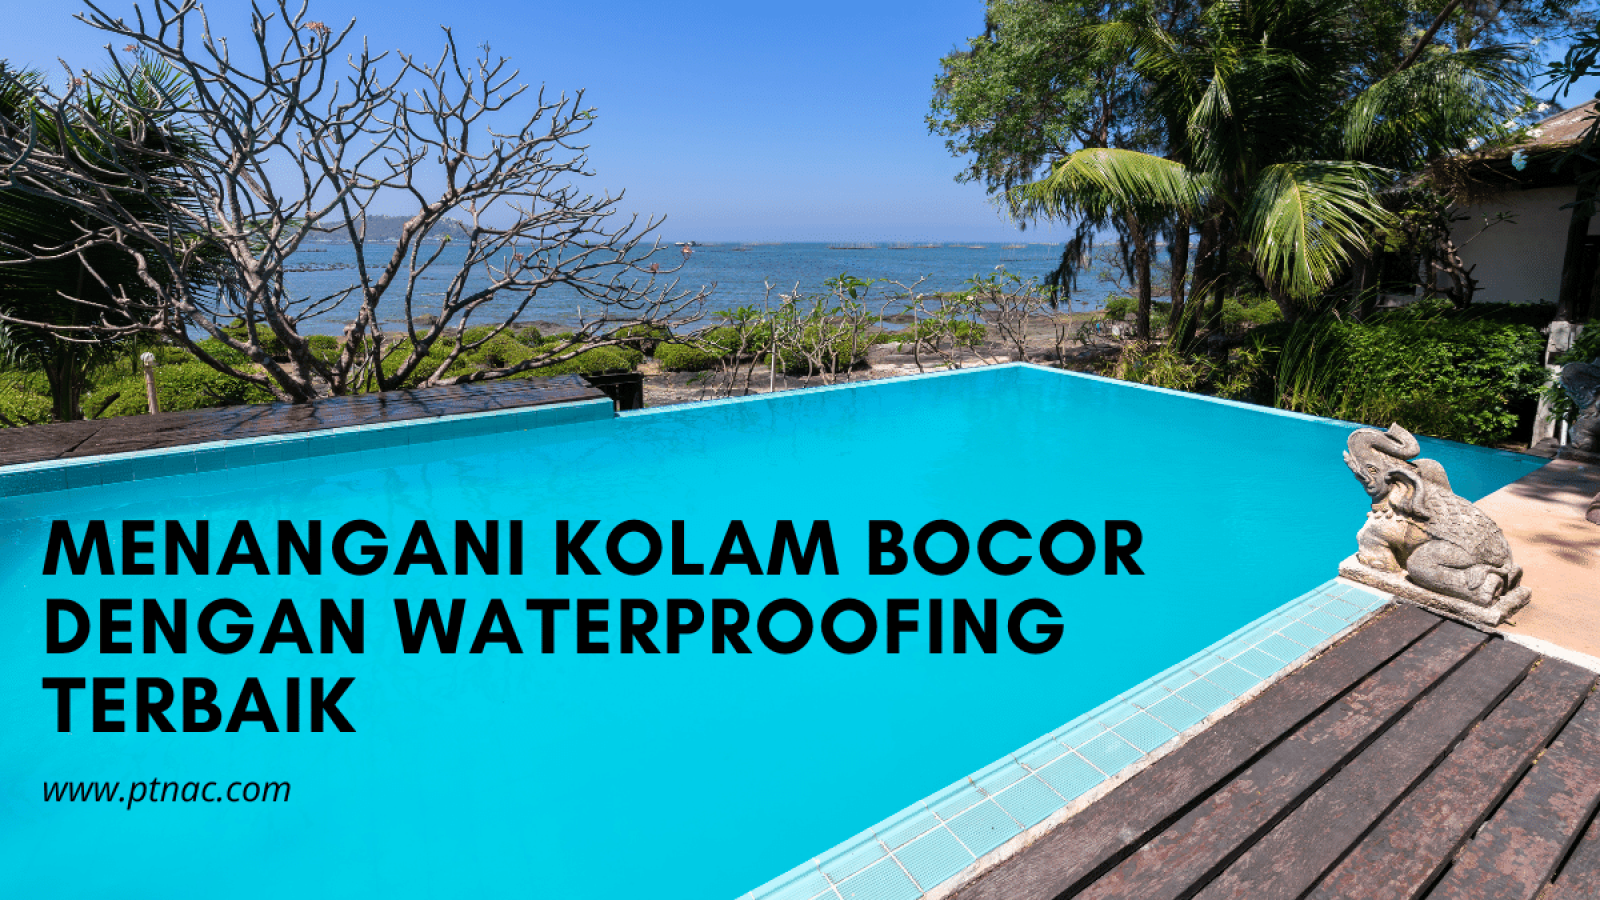 Menangani Kolam Bocor dengan Waterproofing Terbaik